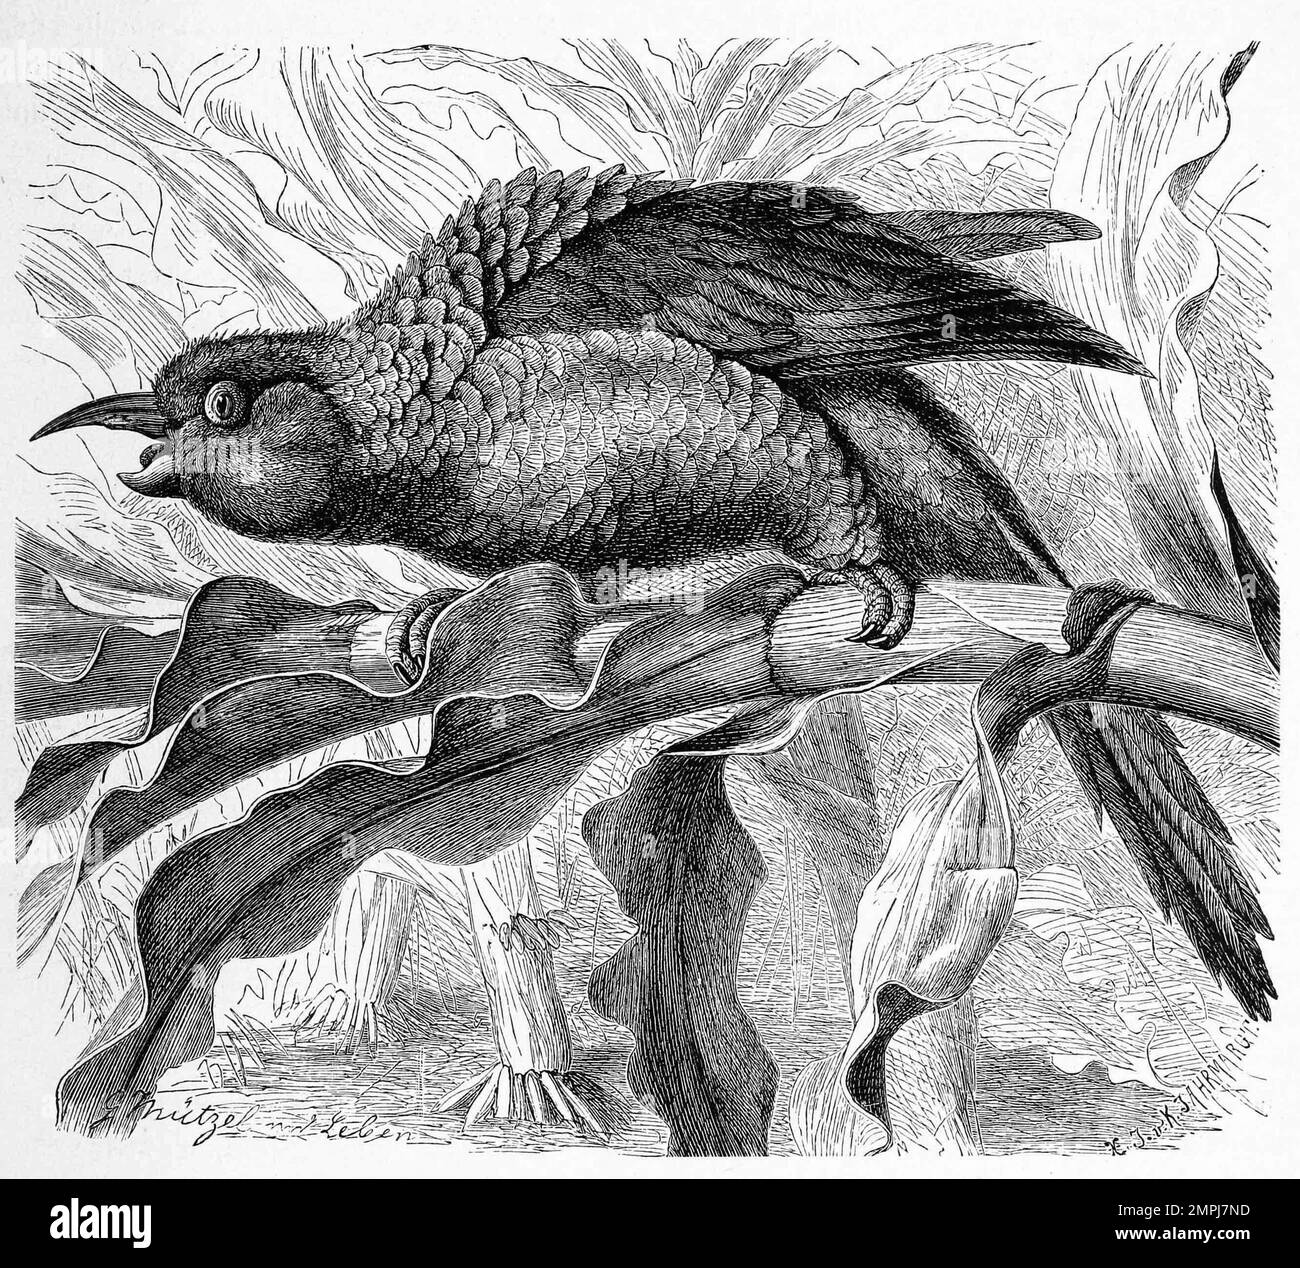 Vogel, Langschnabelsittich, Enicognathus leptorhynchus, eine Vogelart aus der Tribus der Neuweltpapageien, Historiisch, digital restaurierte Reproduktion von einer Vorlage aus dem 18. Jahrhundert Foto Stock